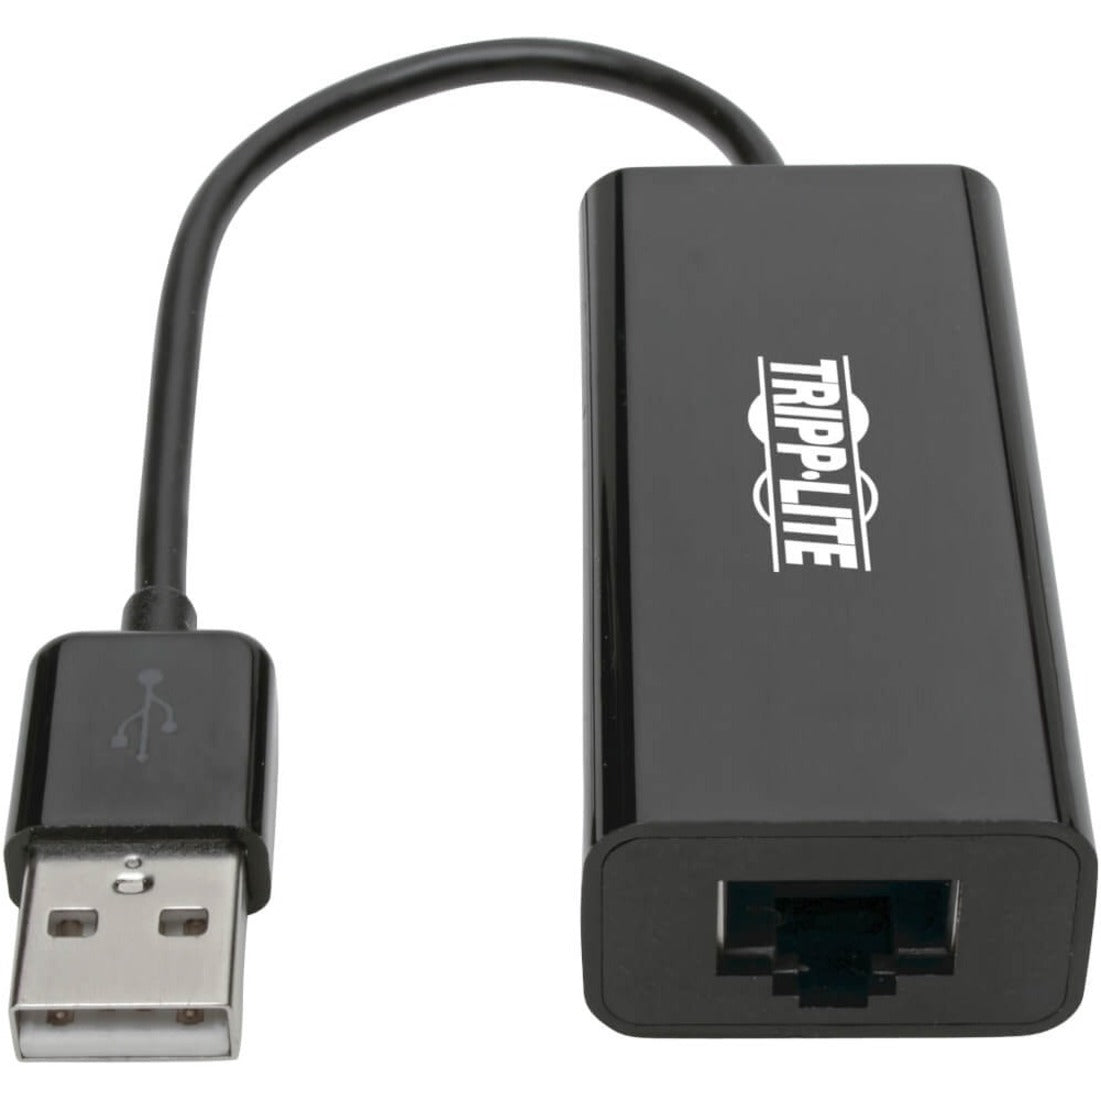 Tripp Lite U236-000-R Adaptateur USB 2.0 vers Ethernet 10/100 Mbps Connexion Réseau Facile Marque: Tripp Lite